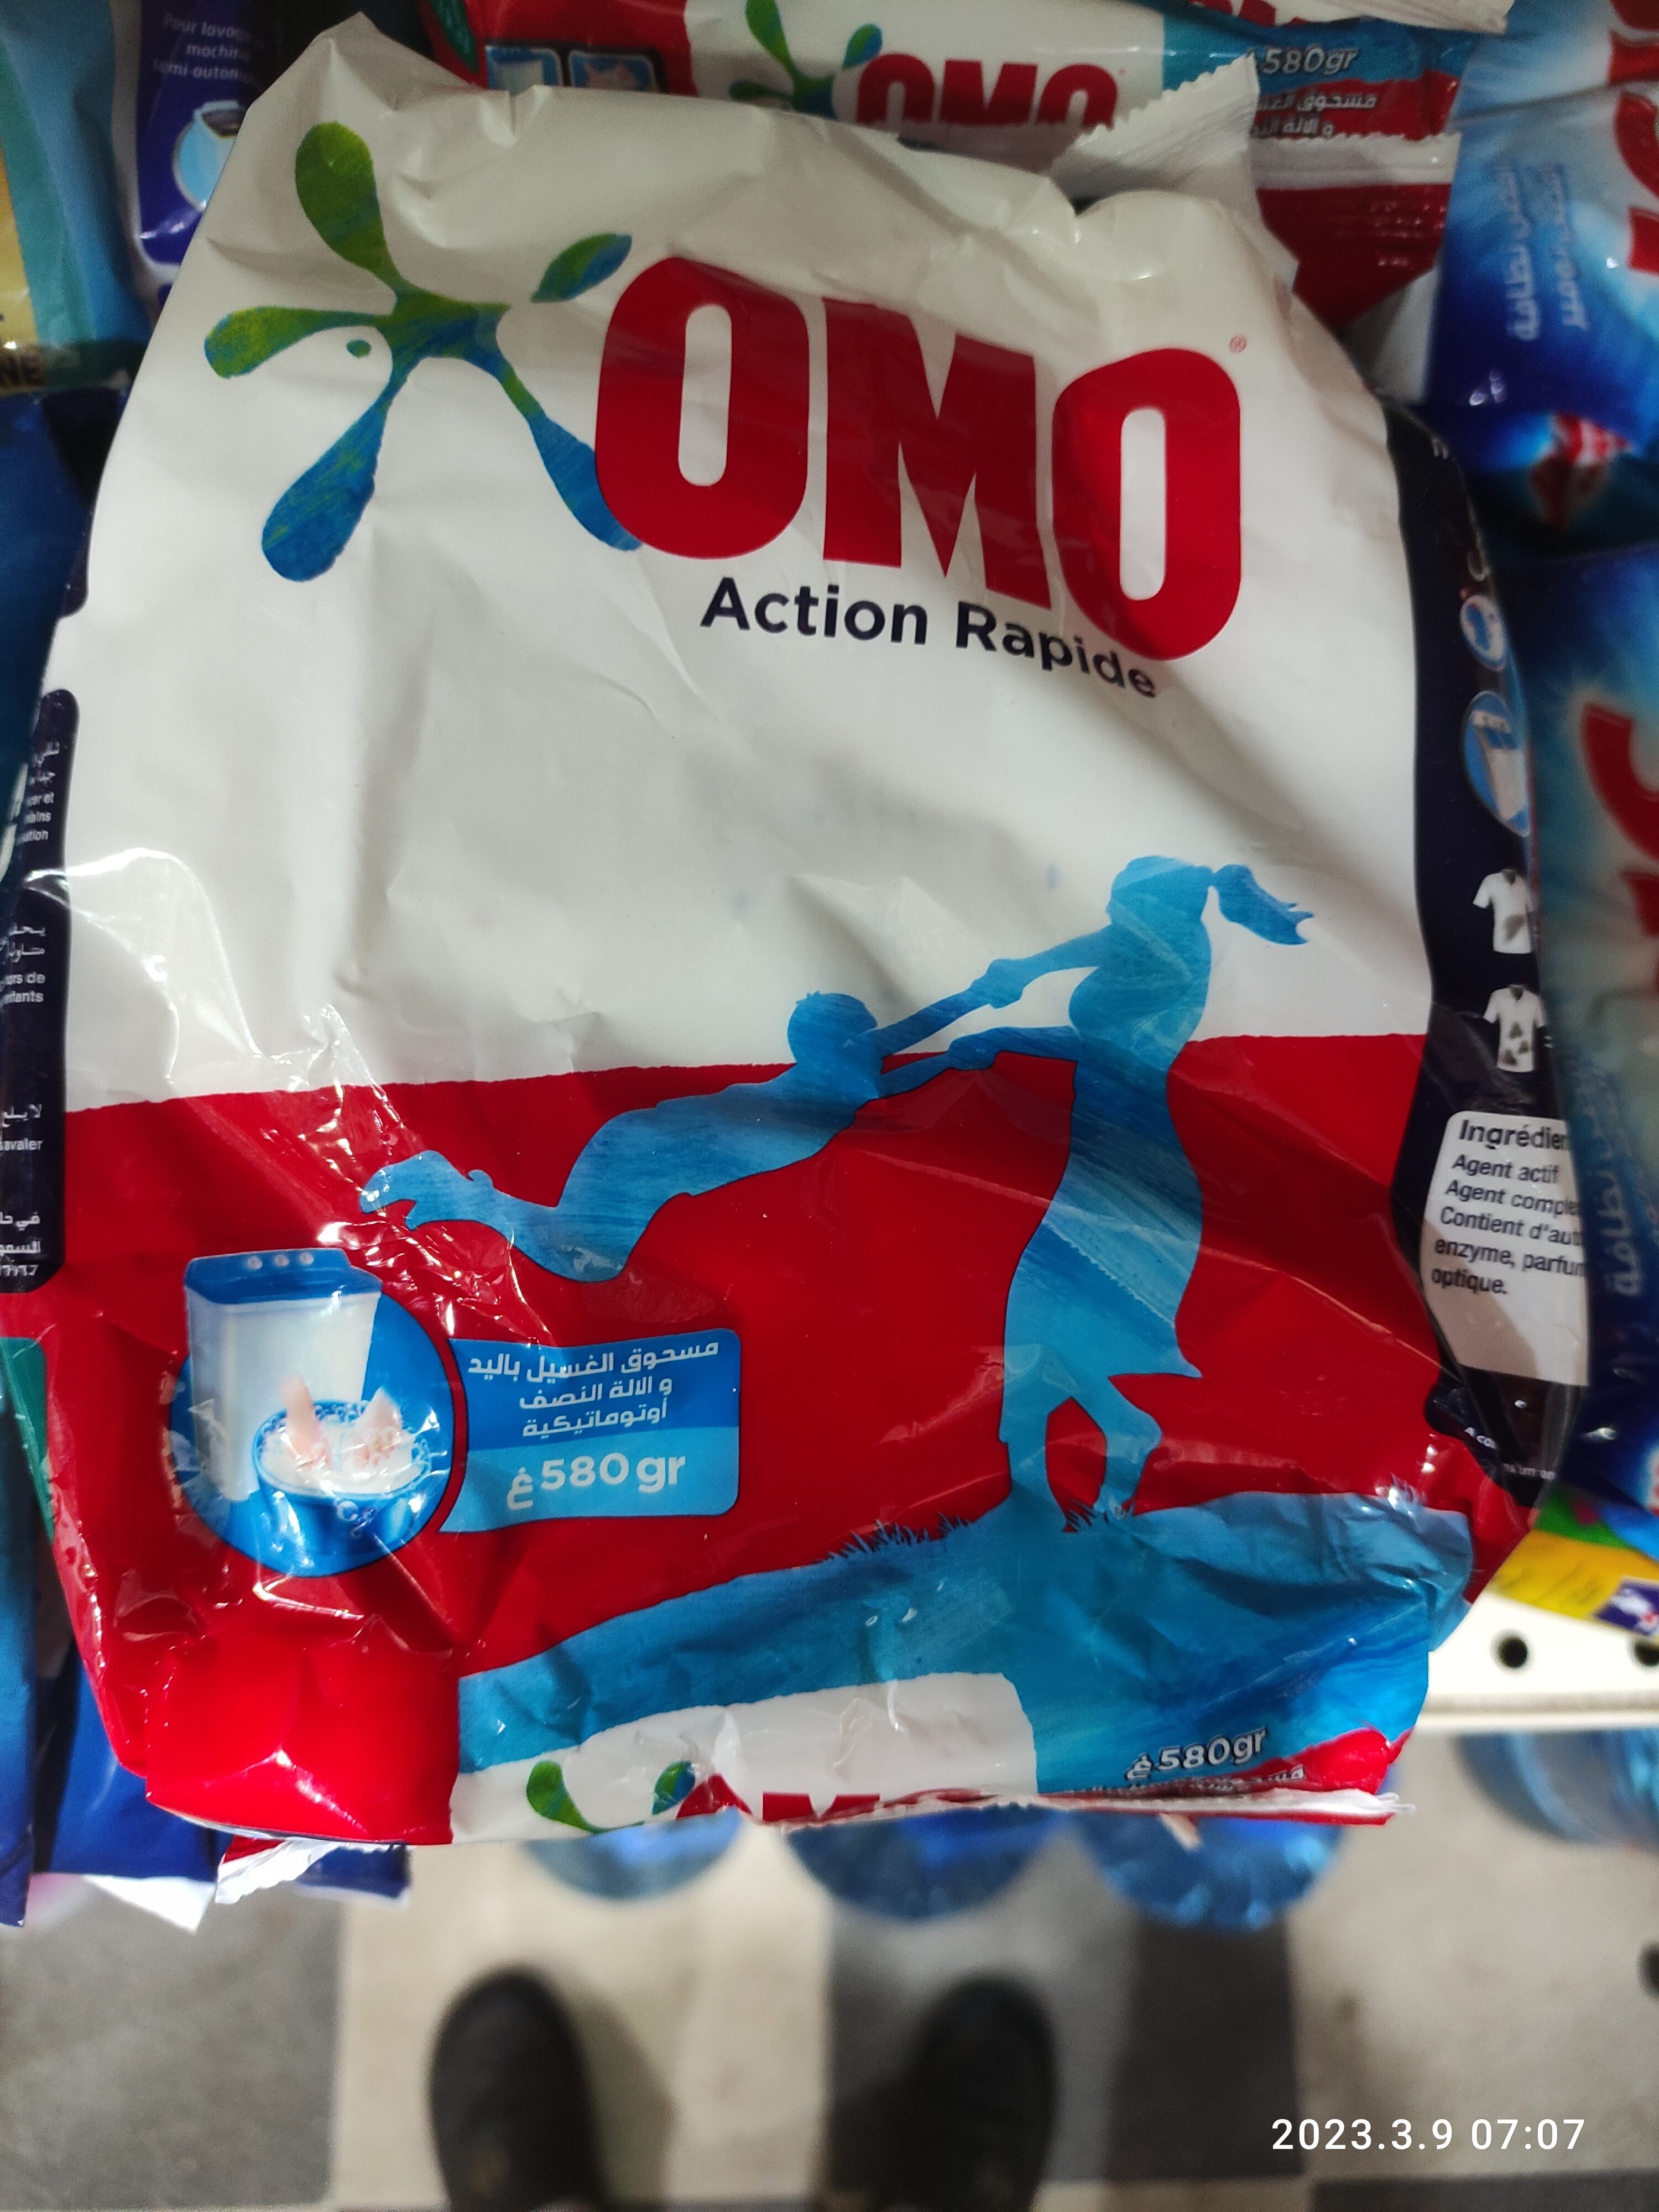 omo - Product - en